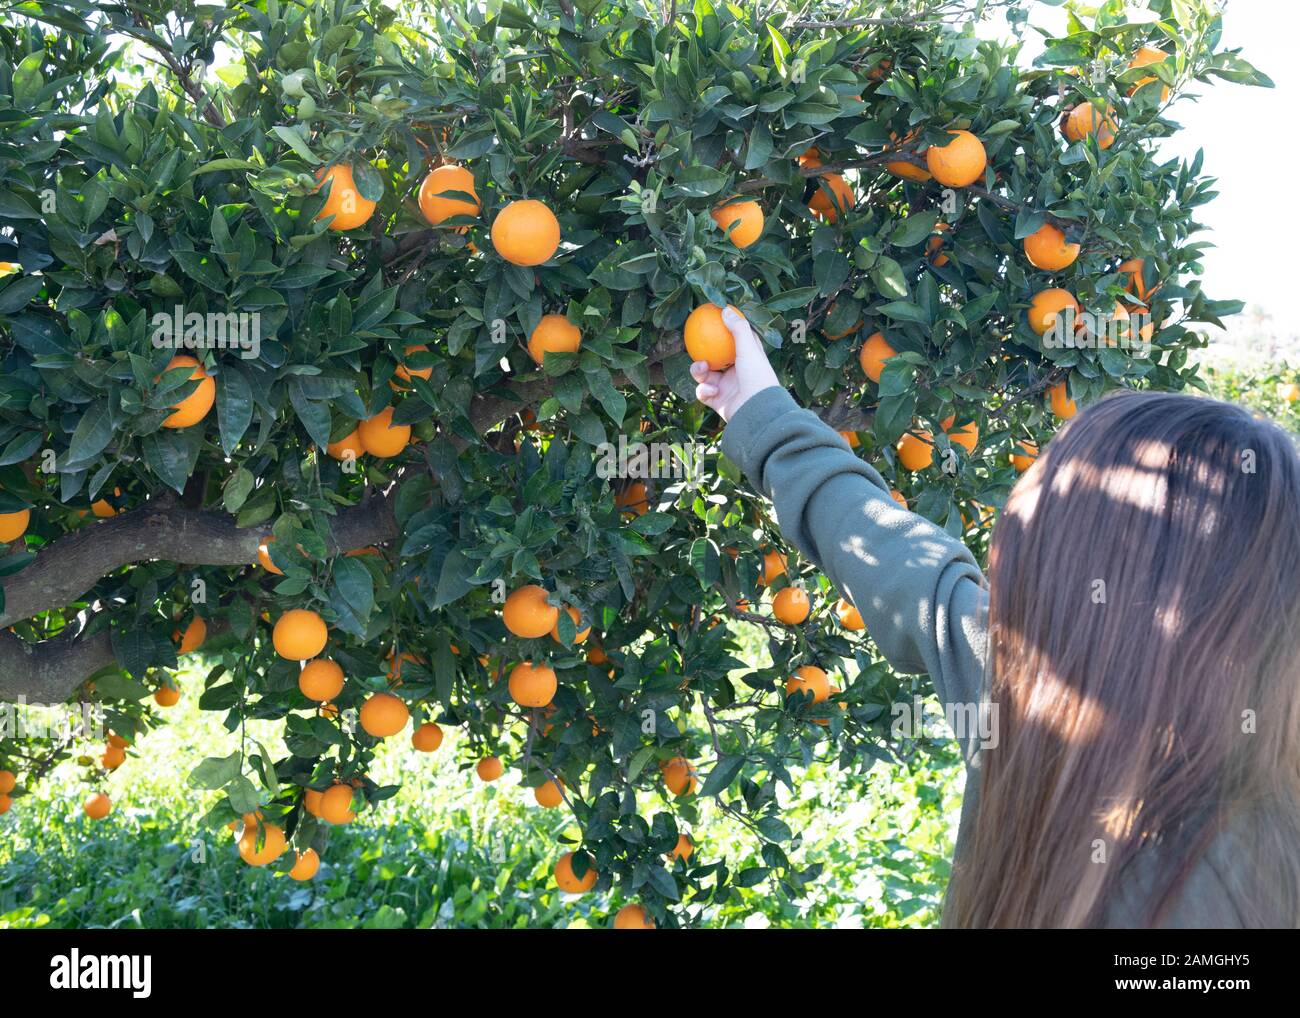 Die Person, die Früchte von einem Orangenbaum in der schönen Landschaft andalucia pflückt, kopiert im Hintergrund Platz Stockfoto